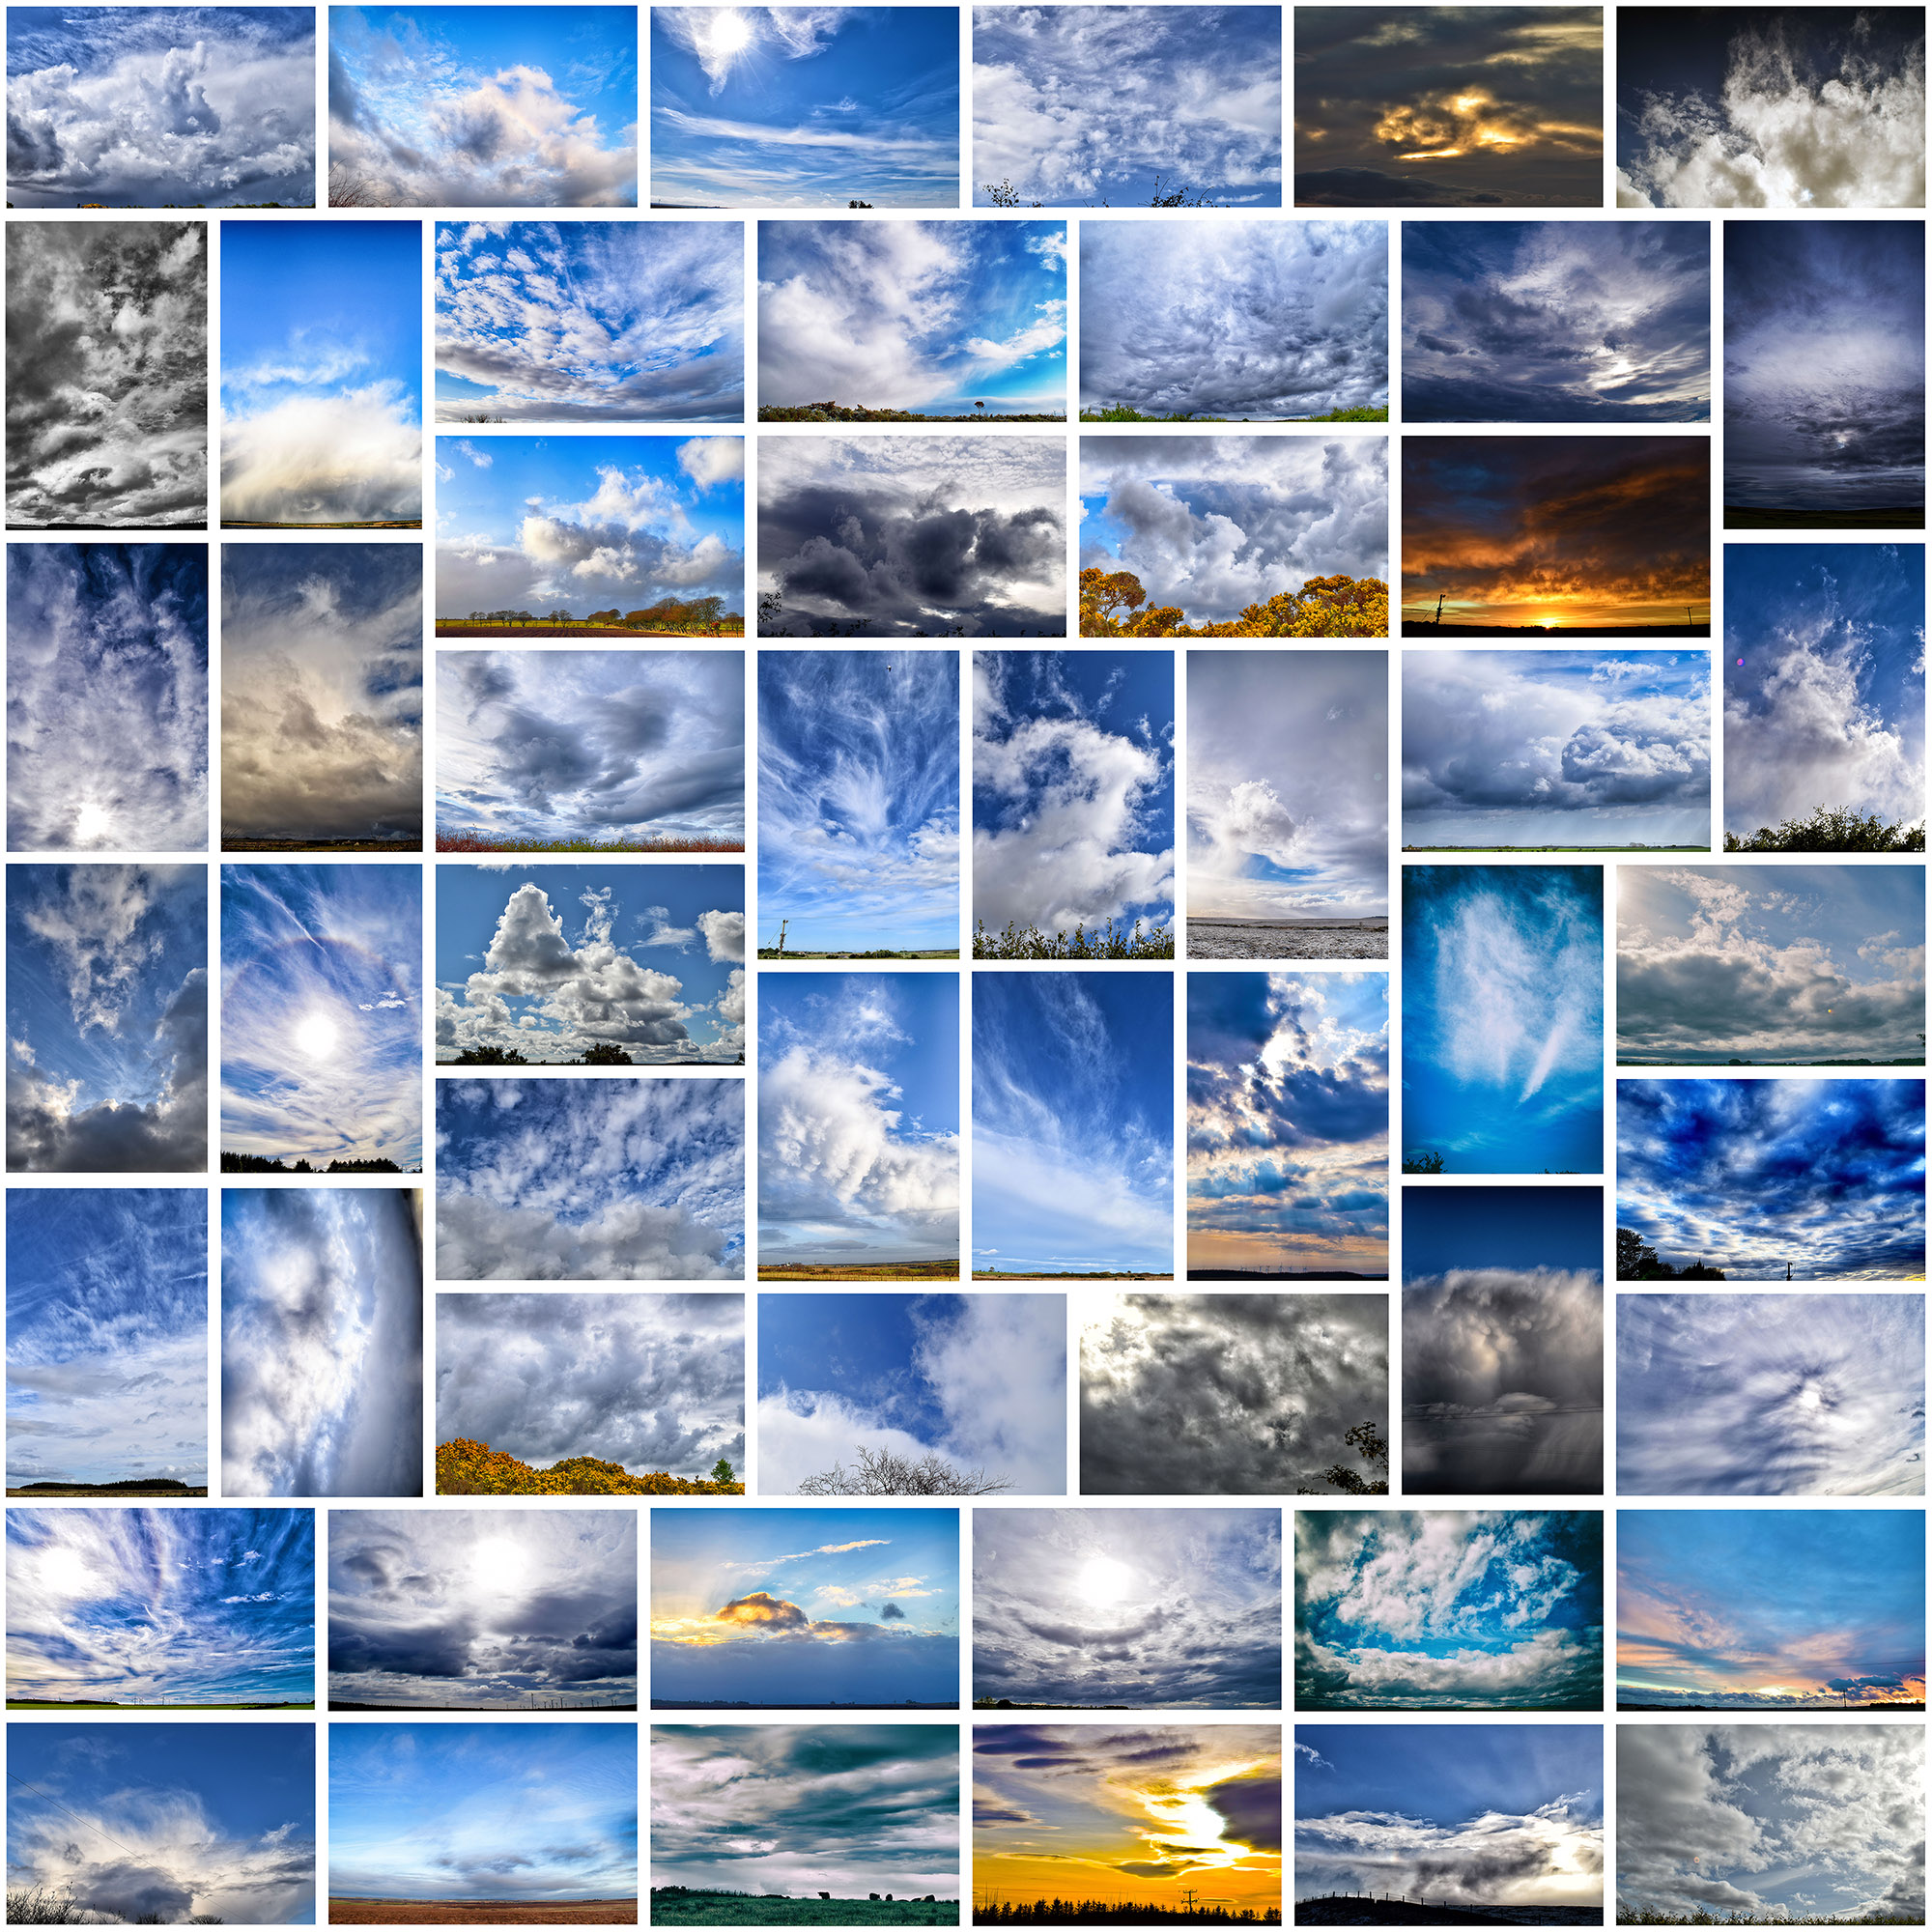 Cloud gallery cloudscape exhibition